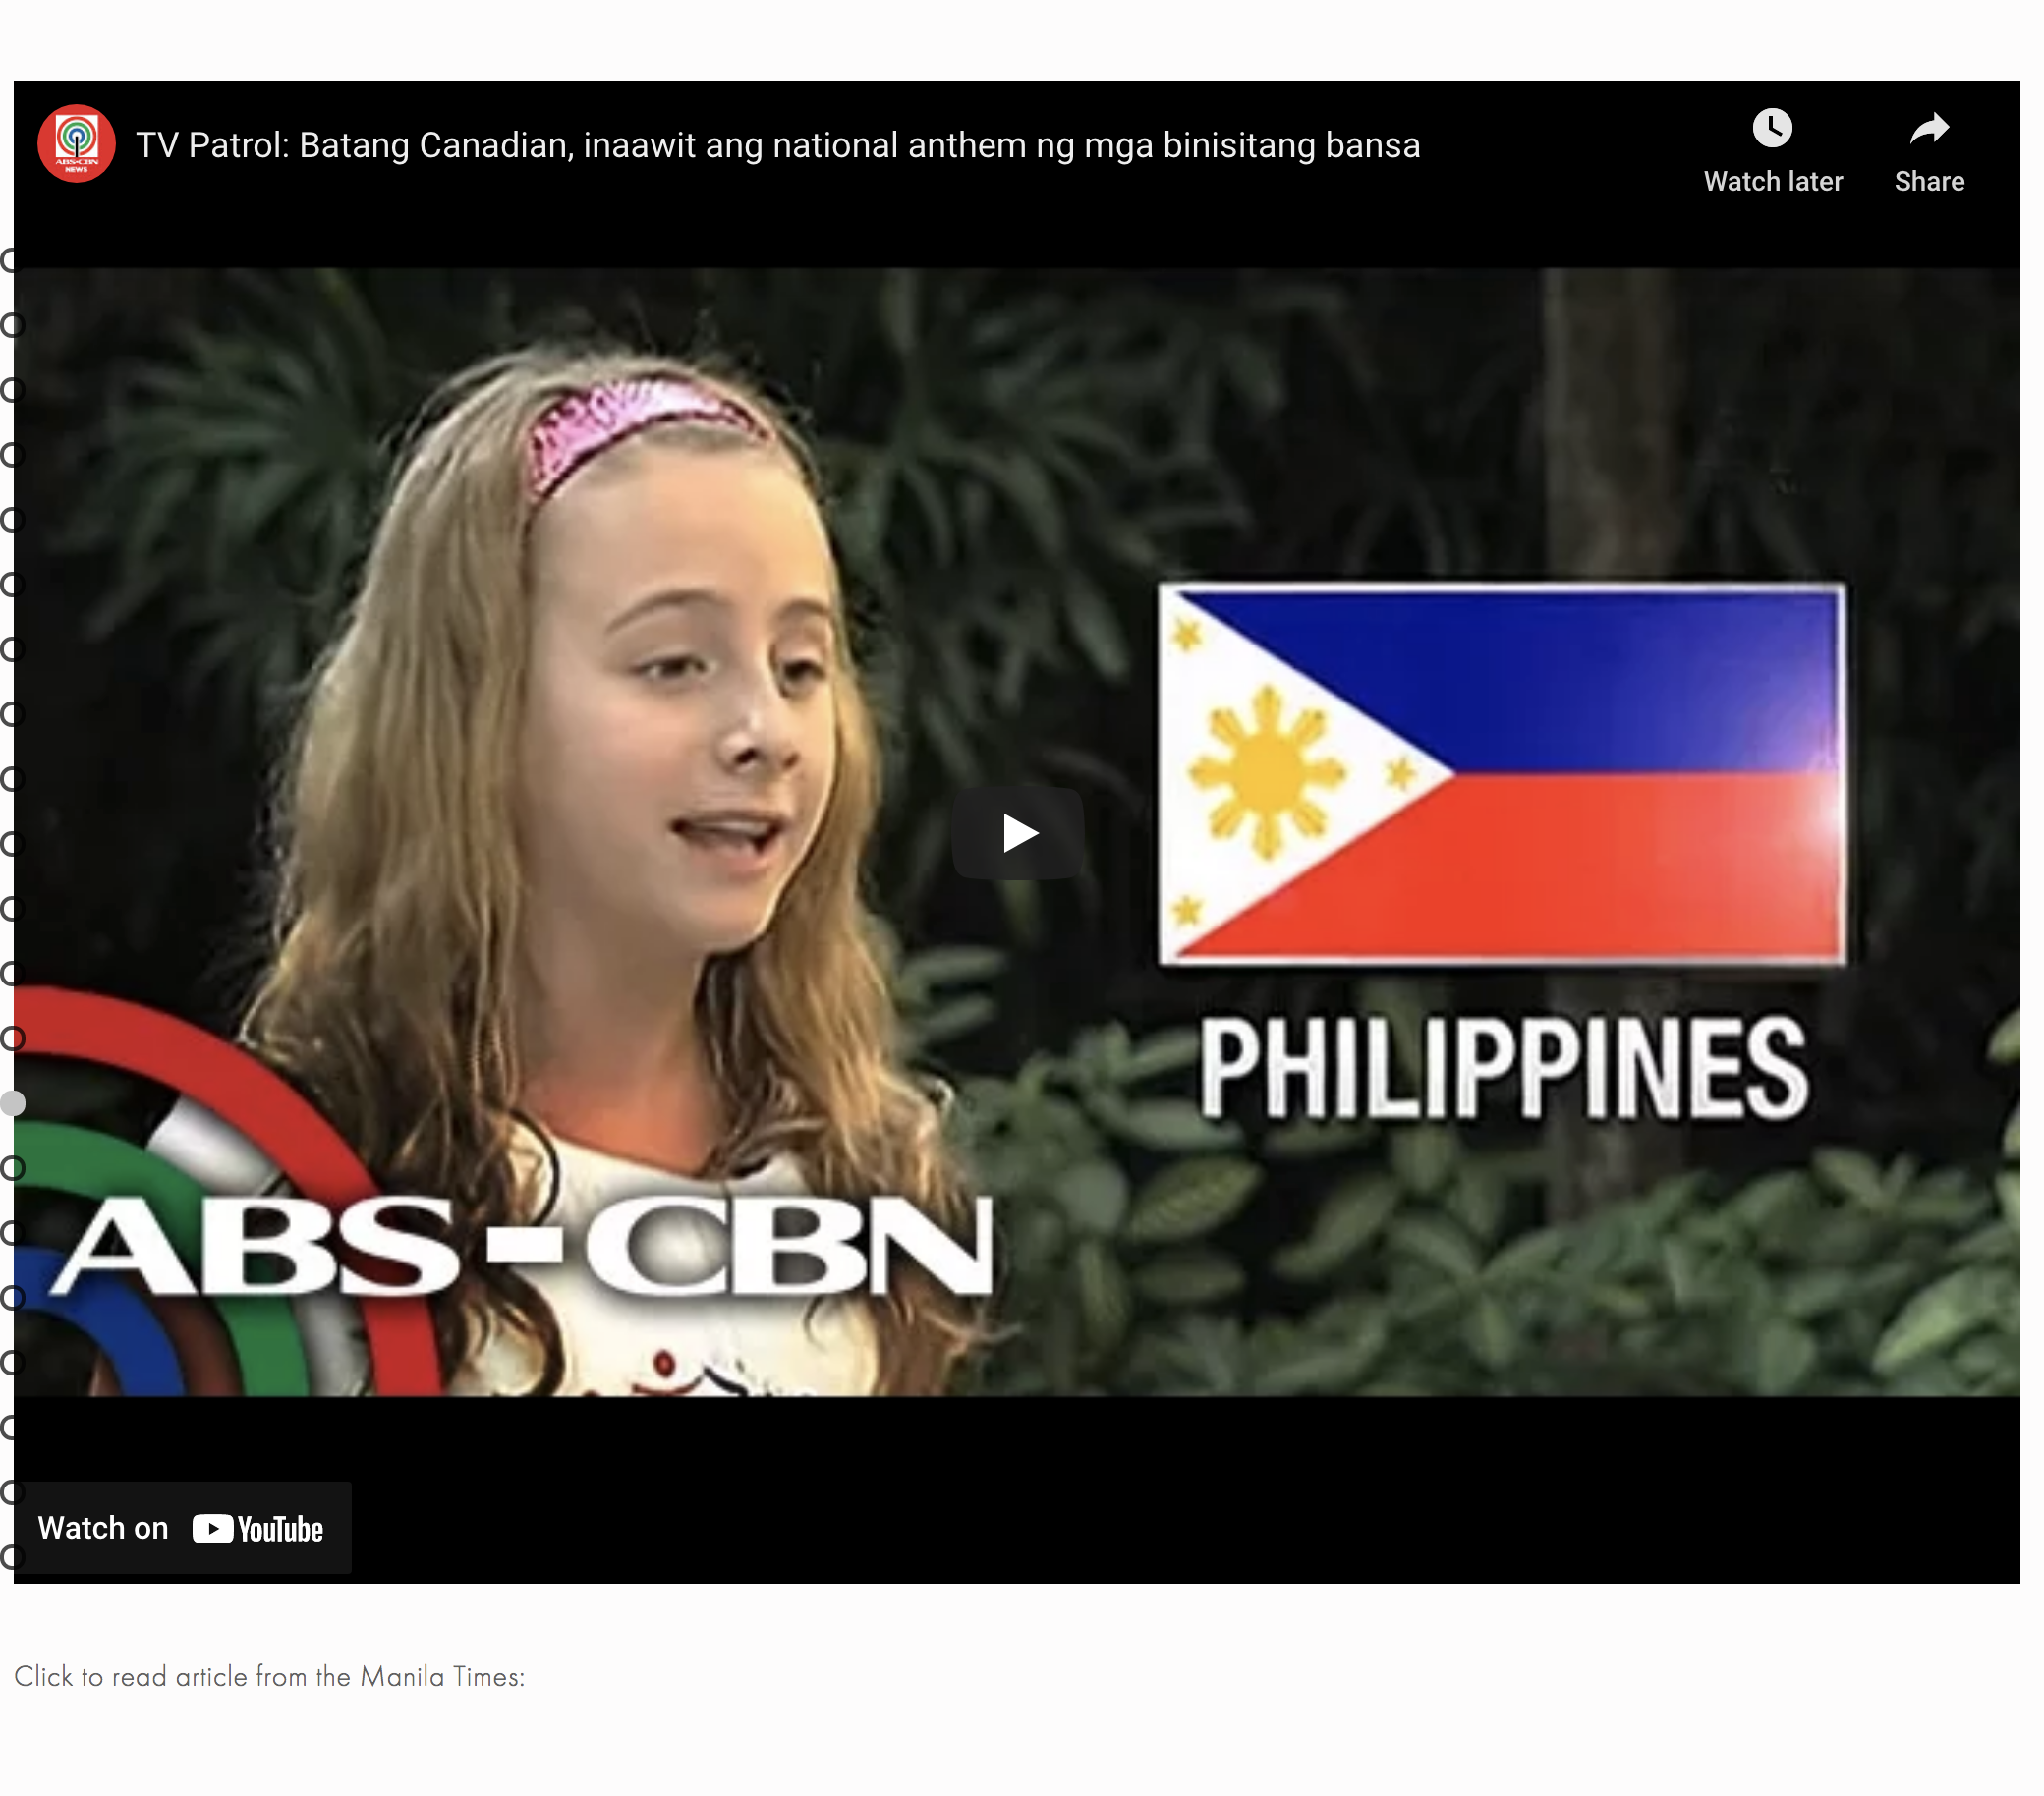 Philippines: ABS-CBN News